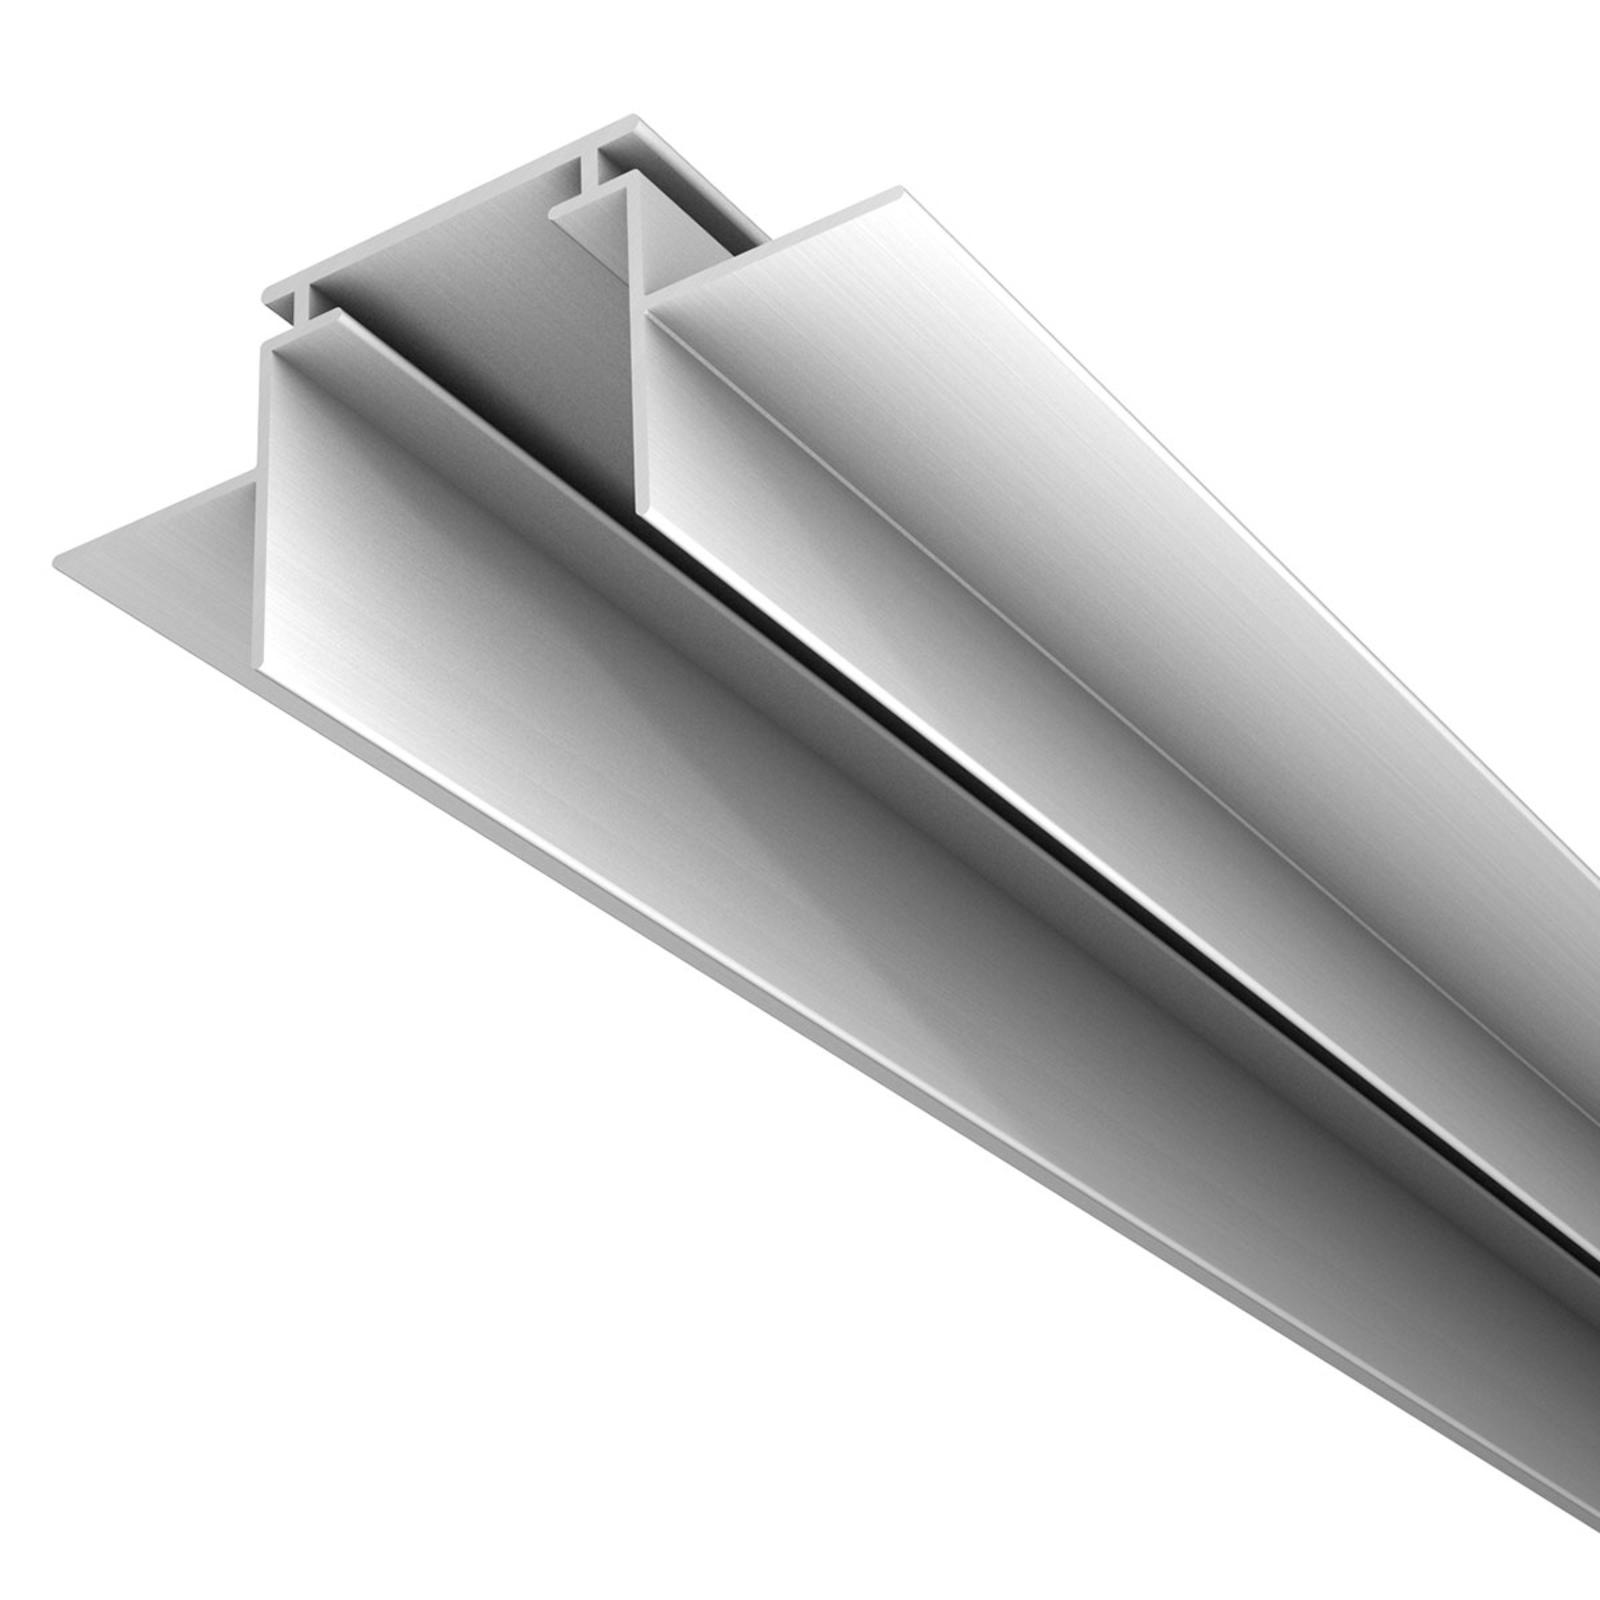 M28 LED aluminijasti profil širine 66 mm podporni profil